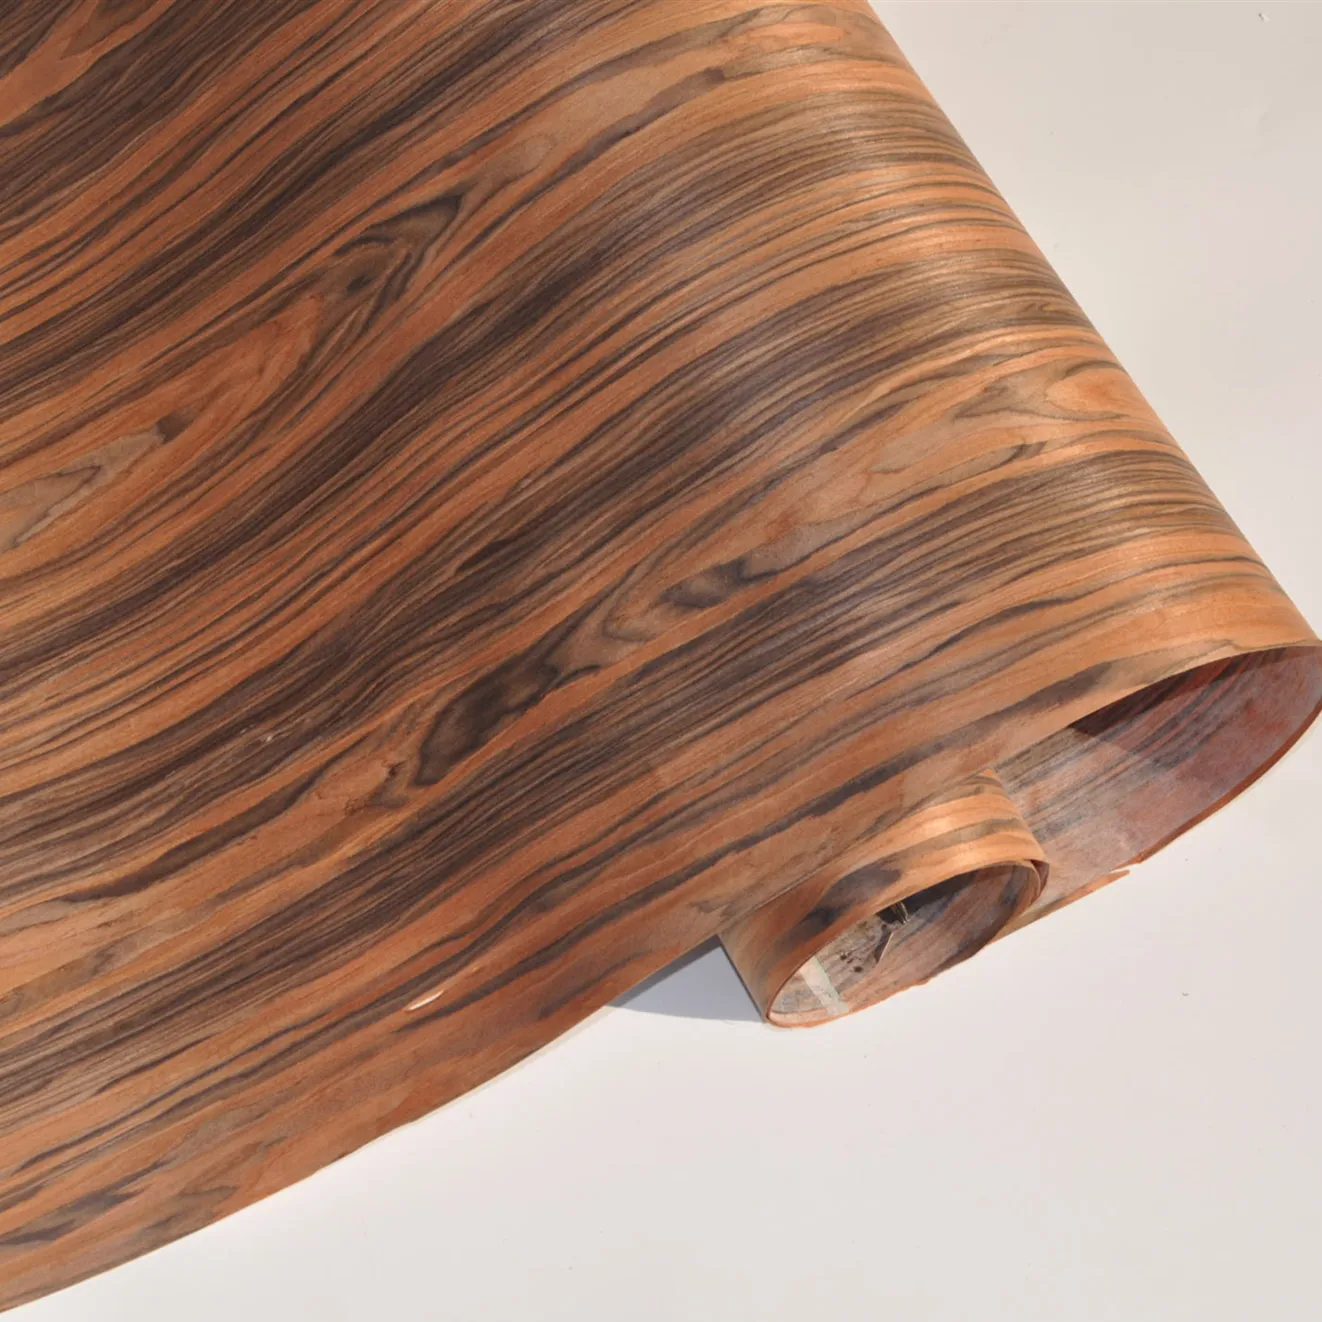 กรีนแลนด์ออกแบบใหม่ออกแบบไม้วีเนียร์ไม้ขนาด250*58ซม. ชิงชันคุณภาพสูงสำหรับเฟอร์นิเจอร์บ้านโต๊ะประตูตกแต่งผิว